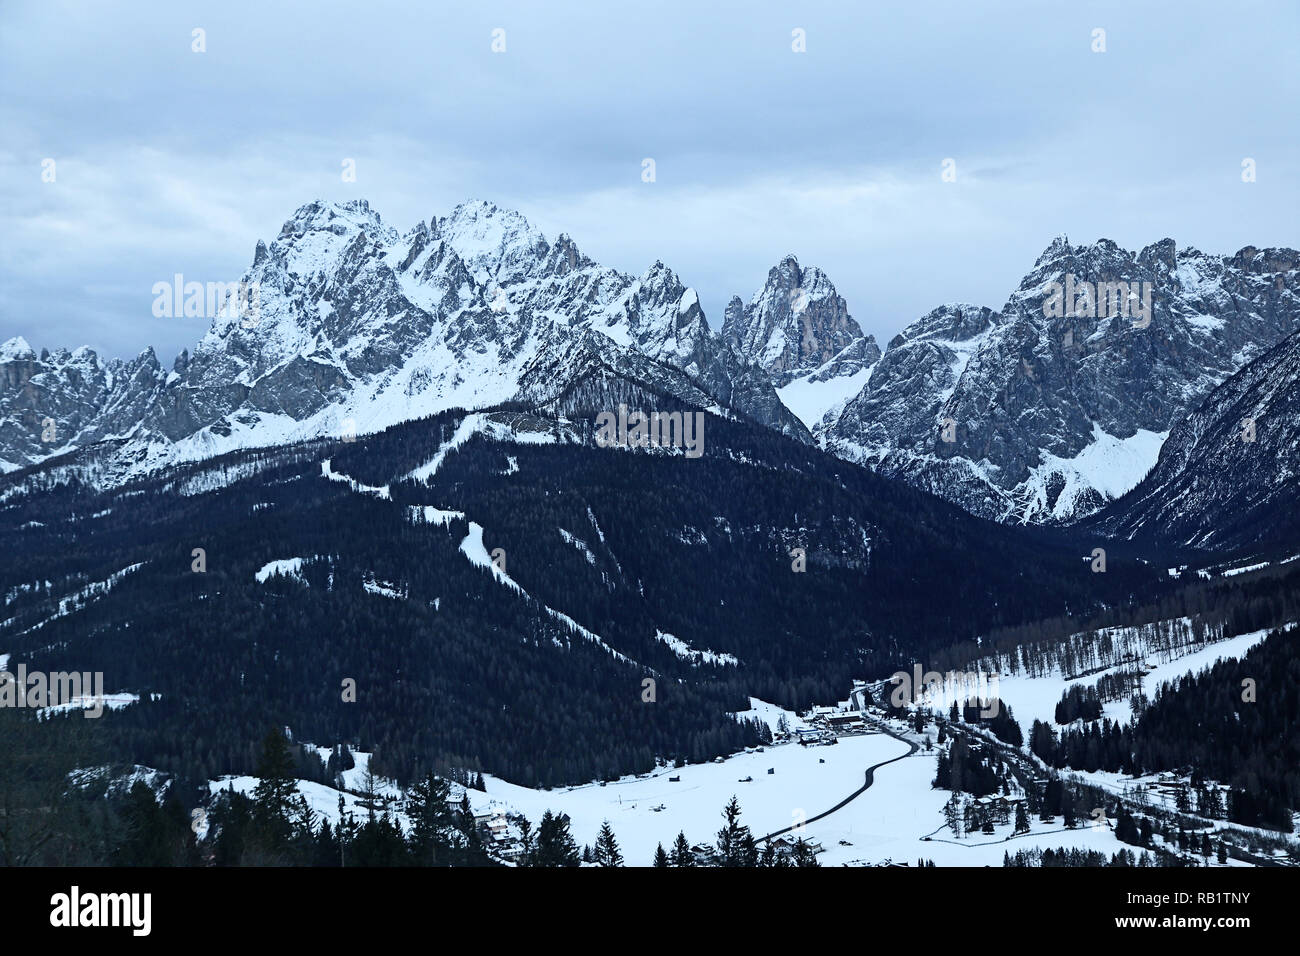 Dolomiti di Sesto, Italie (Dolomites de Sesto), vue aérienne de la vallée Puster, Sesto, le Croda Croda Rossa, le dei Tre Scarperi Toni et la mo Banque D'Images